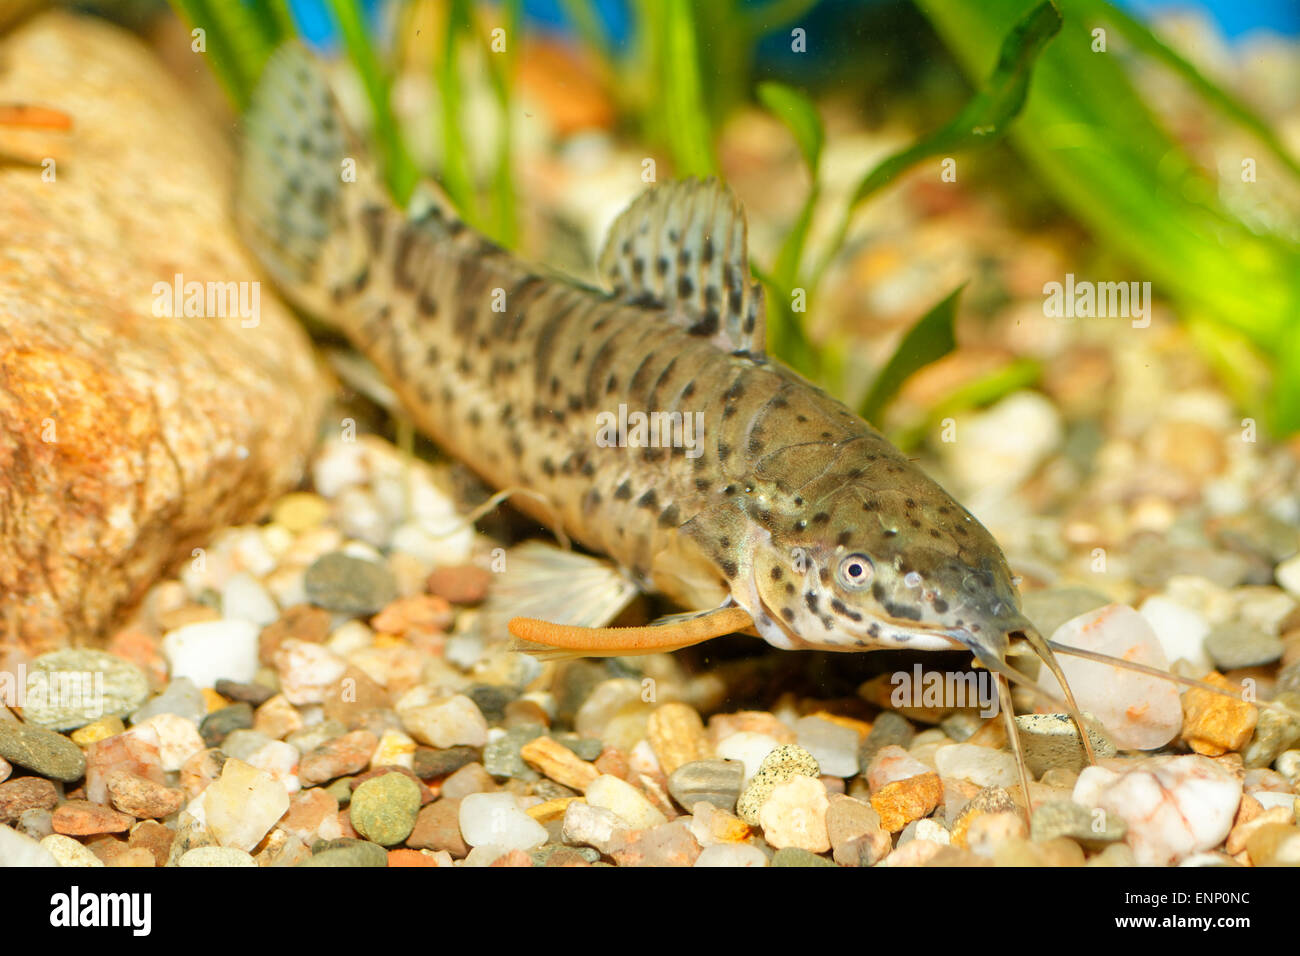 Nice aquarium fish from genus Hoplosternum. Stock Photo